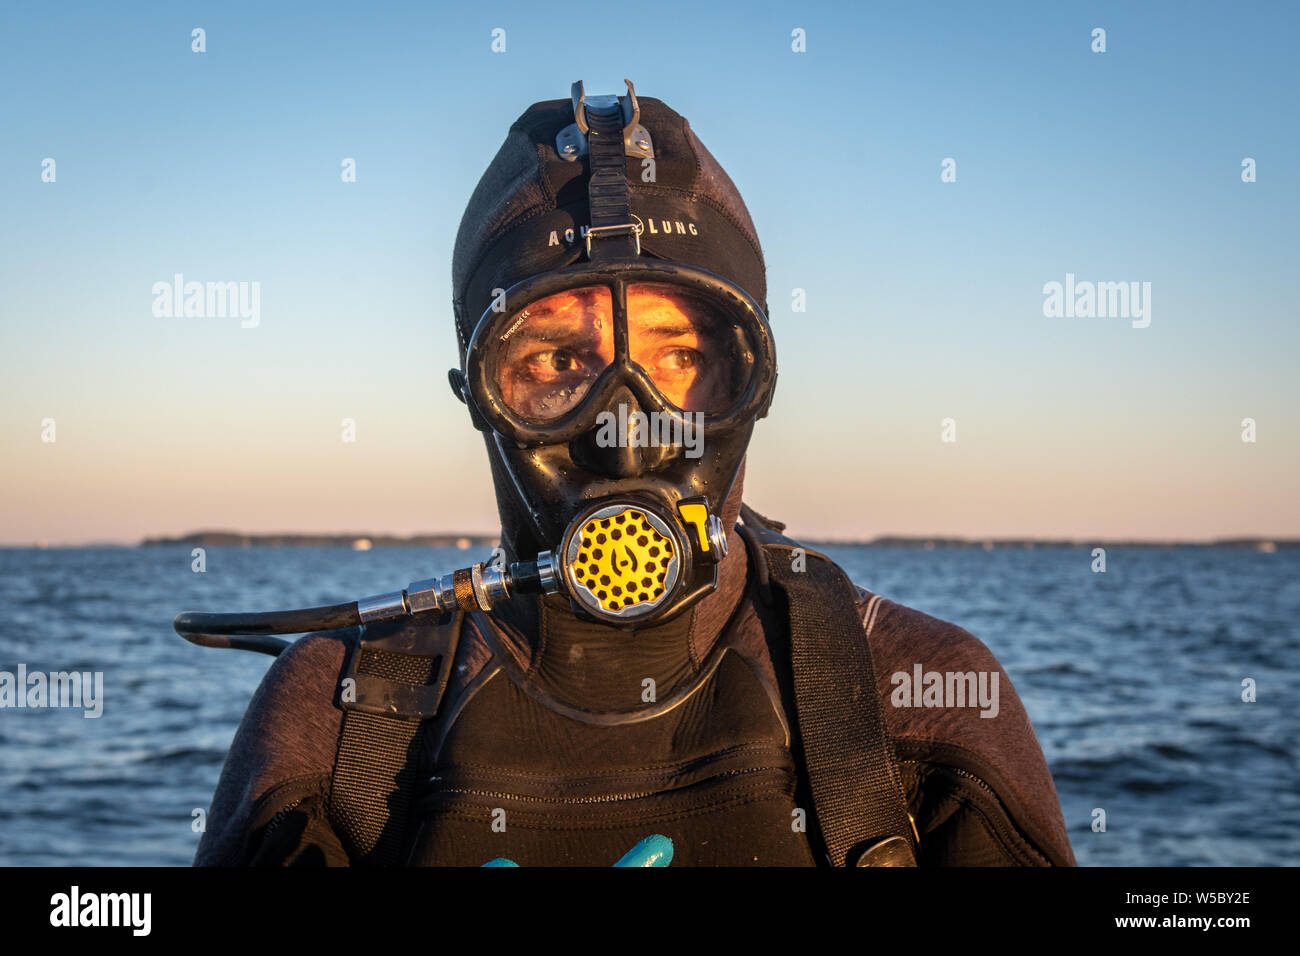 Eine wilde Oyster Diver bereitet und prüft seine Ausrüstung vor dem Tauchgang, Wittman, Maryland. Stockfoto